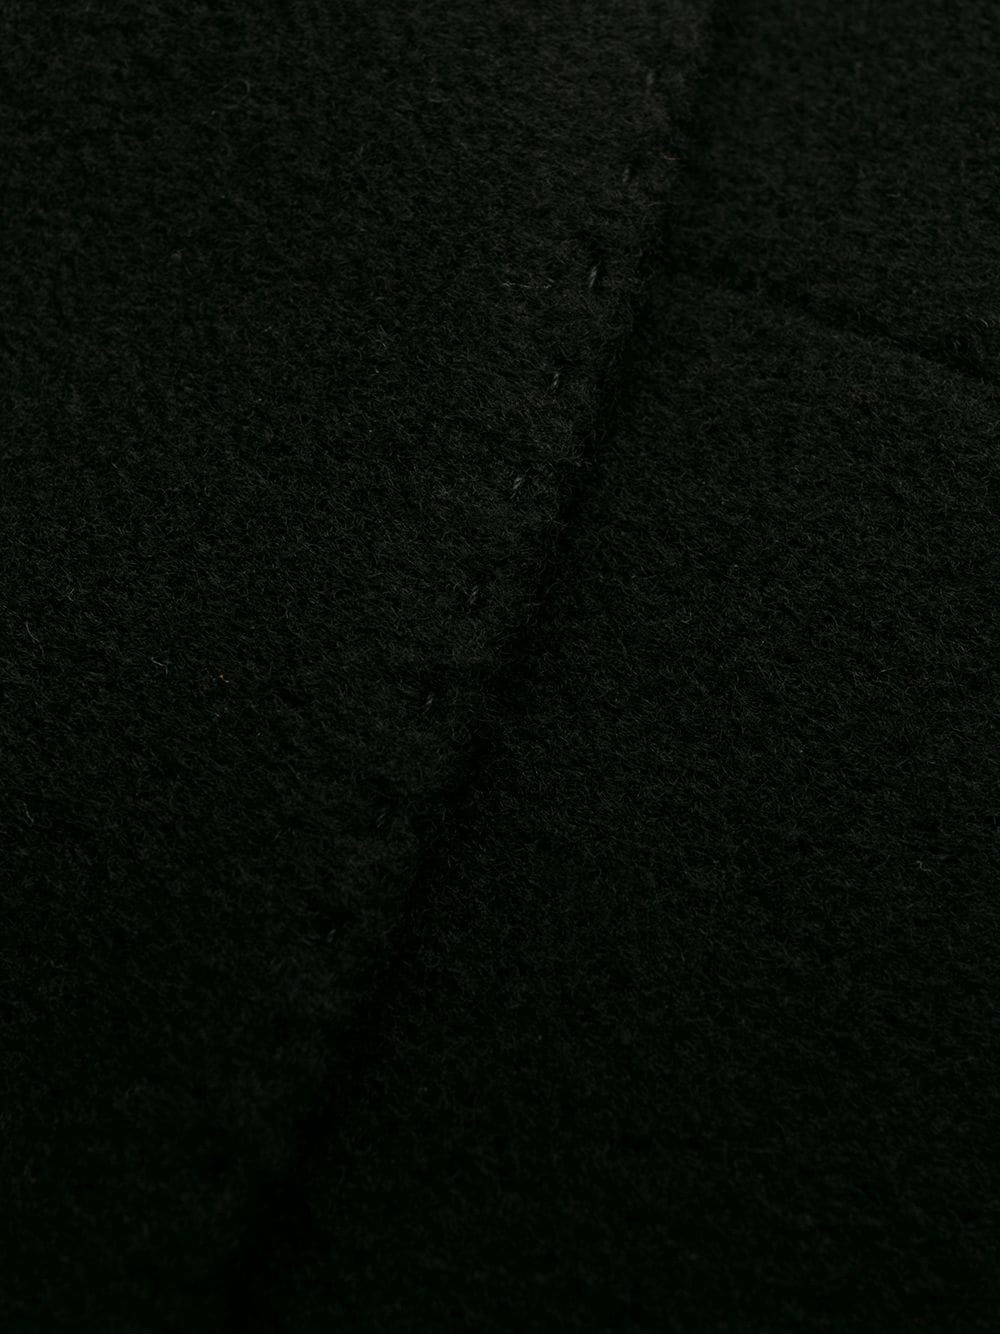 cappotto sartoriale monopetto nero in misto lana e cashmere